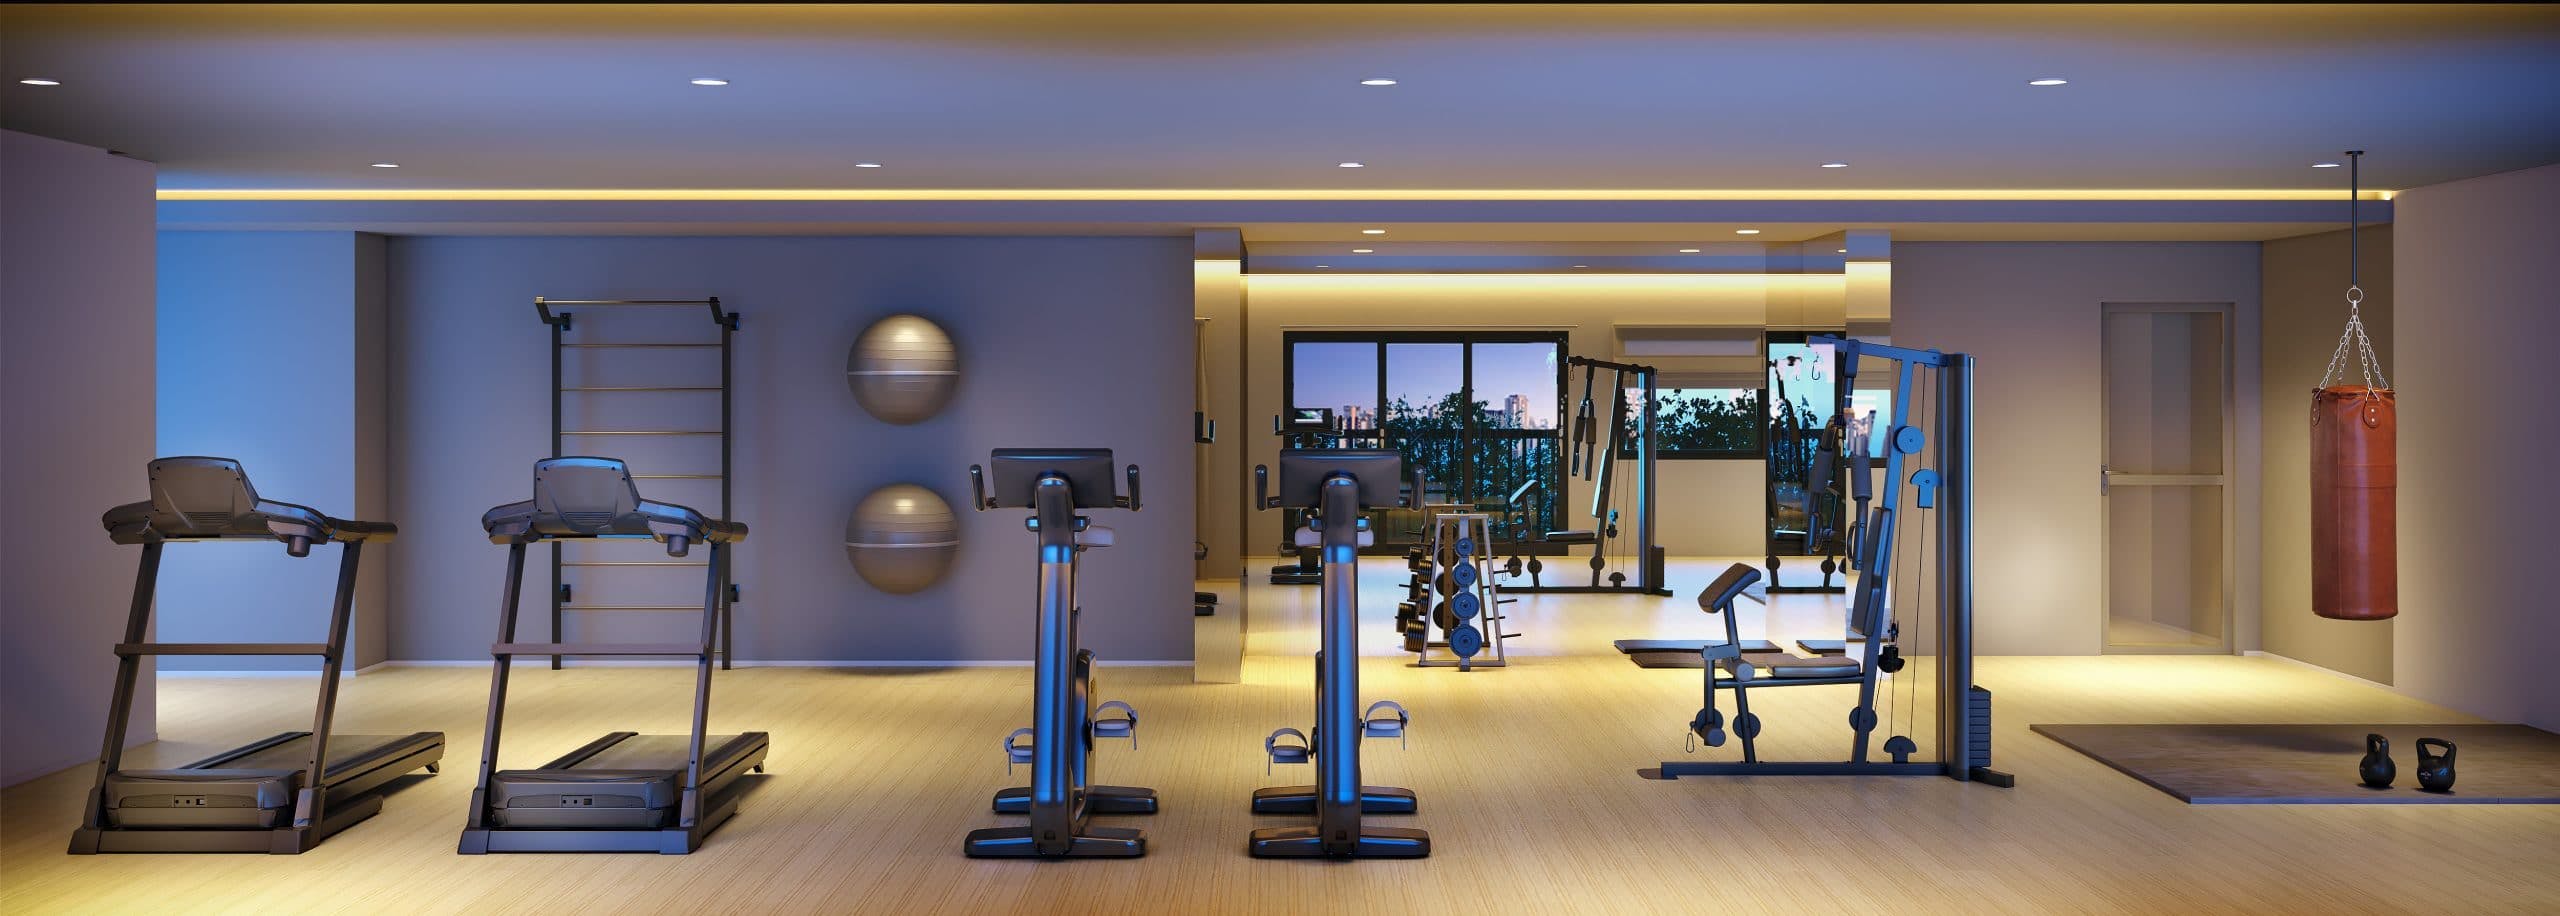 Imagem 3D do Fitness Residencial